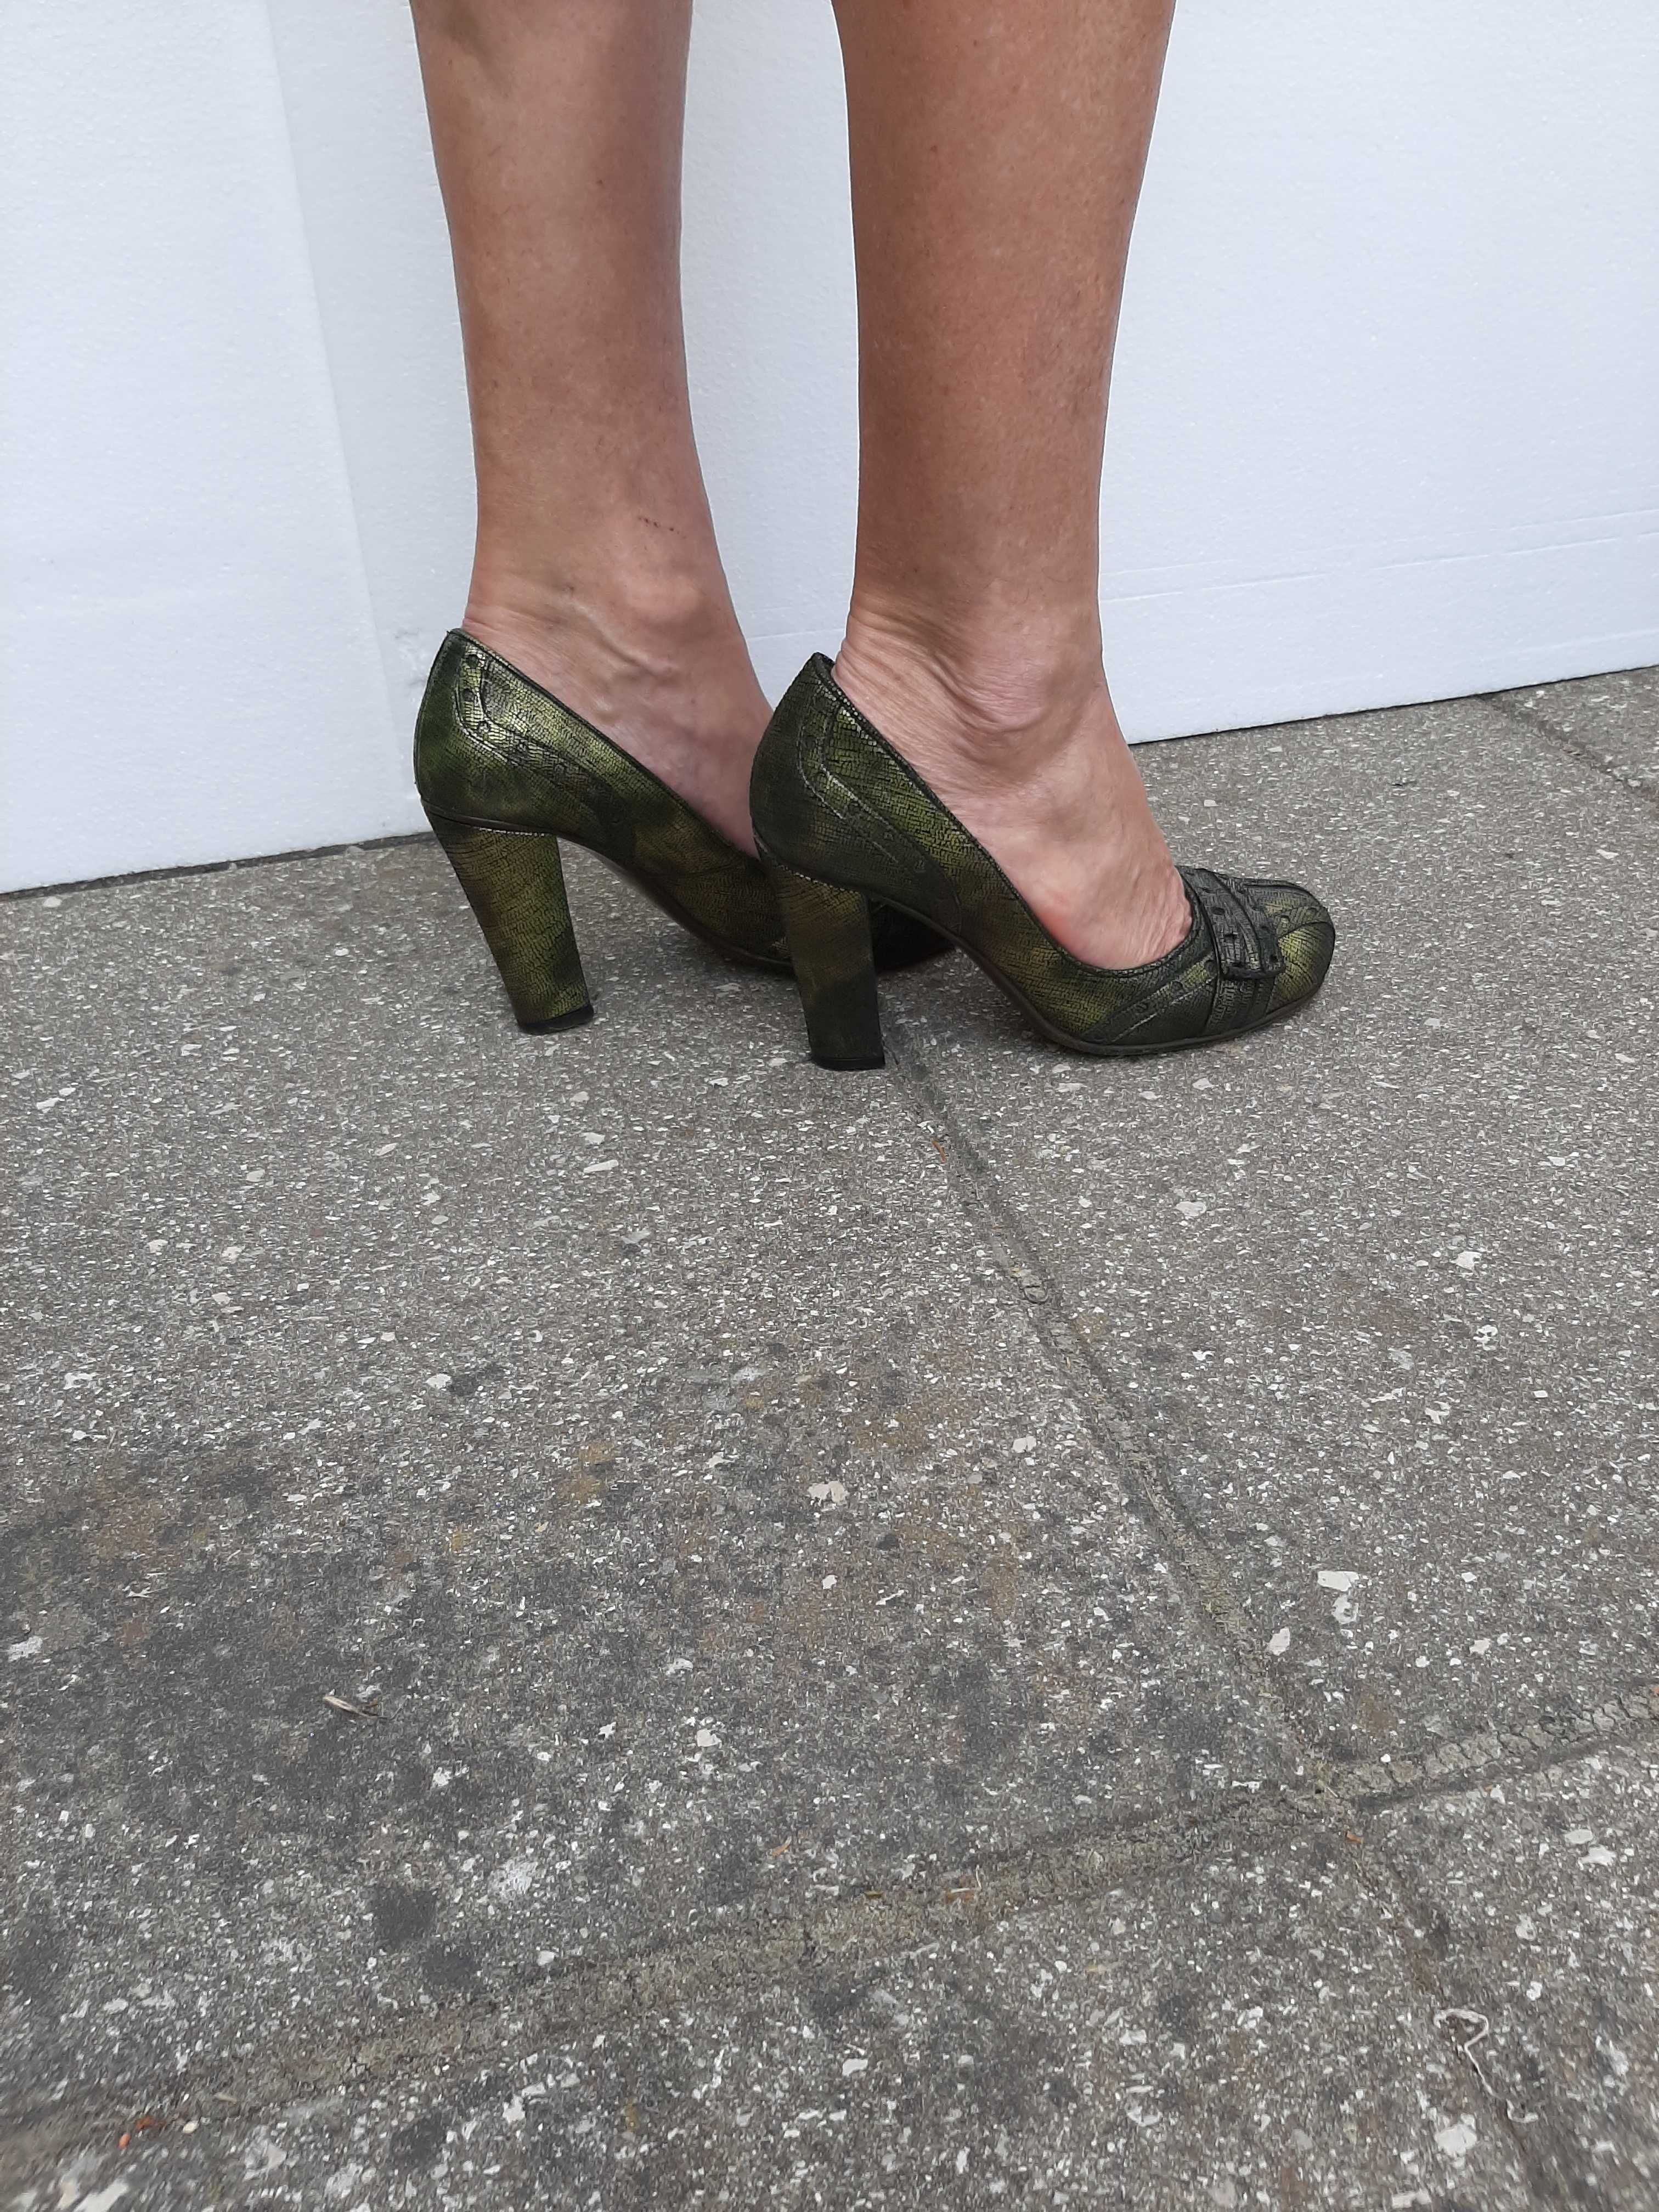 Sapatos cor "Verde Mosca" - Paulo Brandão